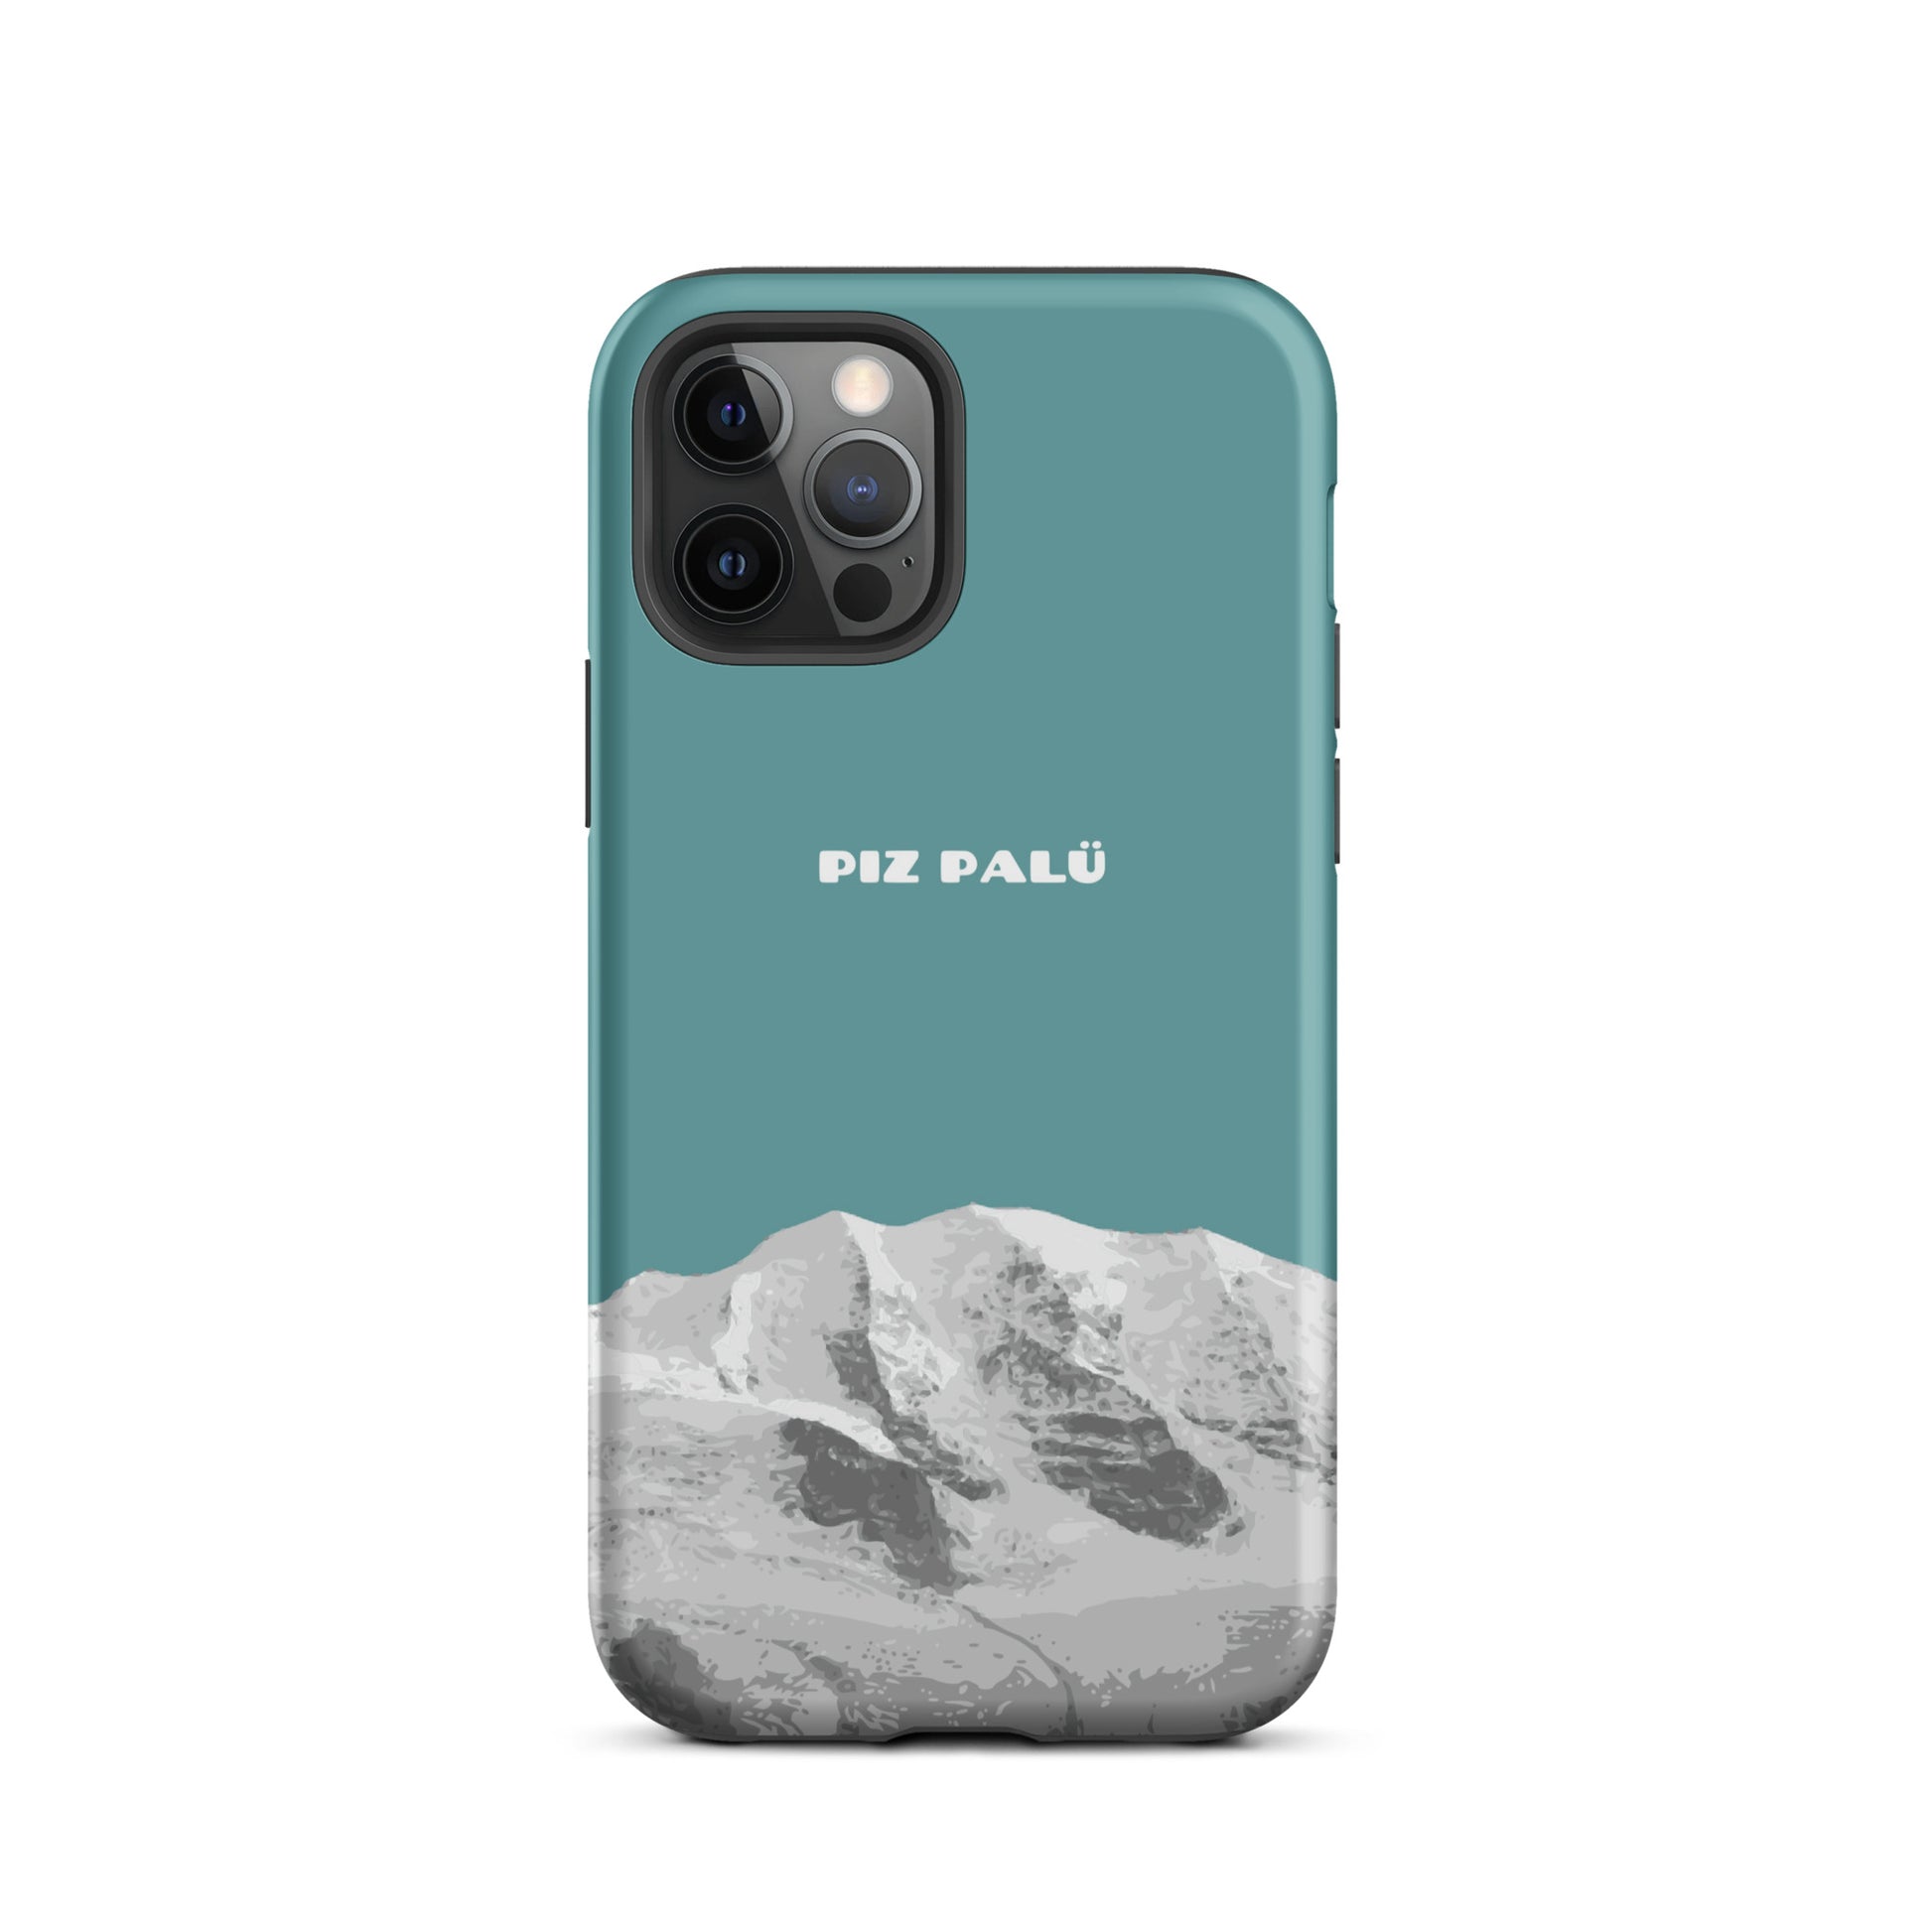 Hülle für das iPhone 12 Pro von Apple in der Farbe Kadettenblau, dass den Piz Palü in Graubünden zeigt.